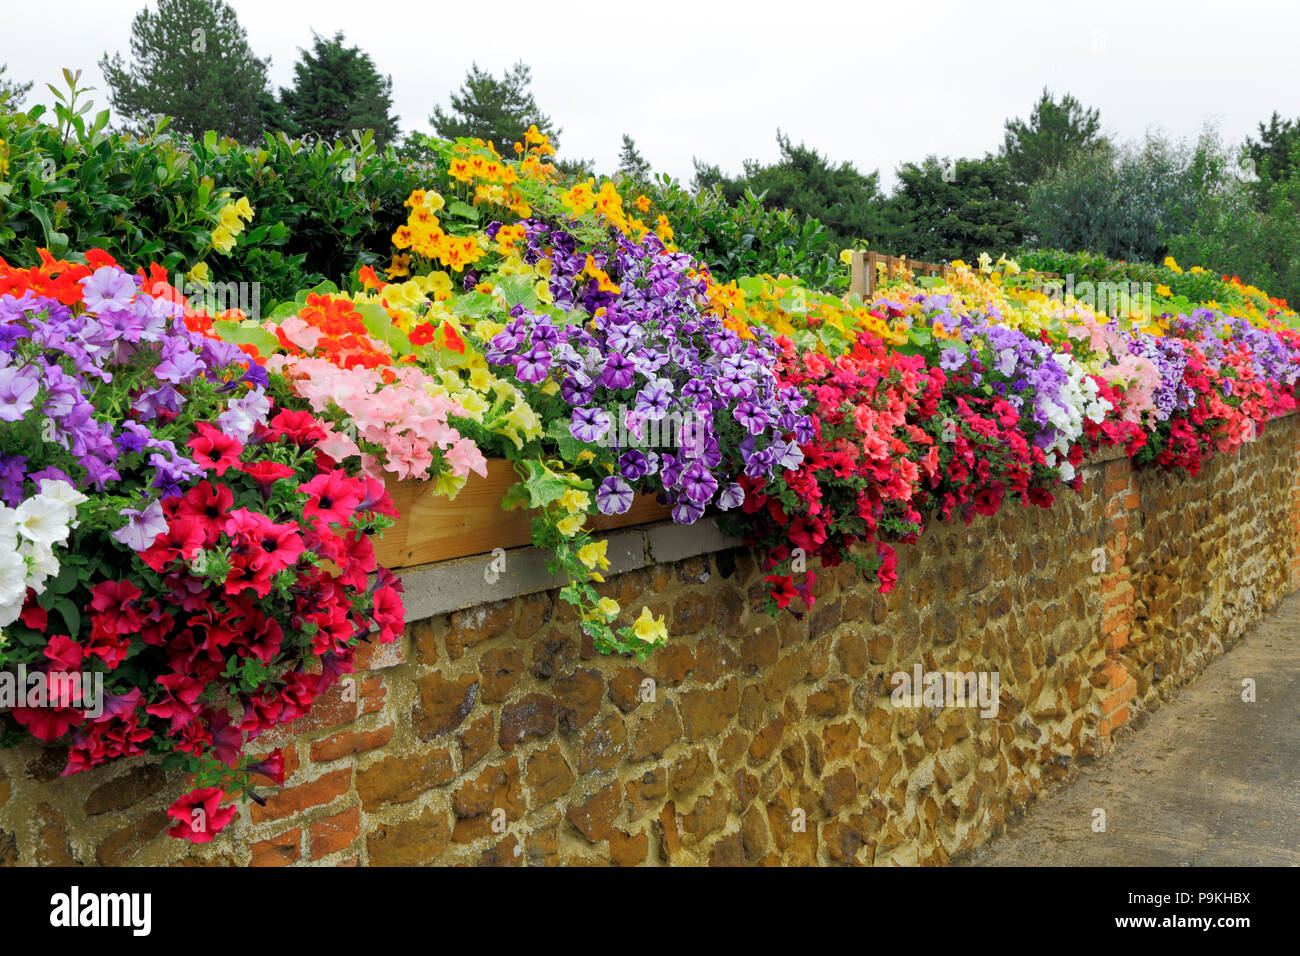 Muro de jardín, petunias, azul, morado, rojo, rosa, blanco, amarillo, diversos colores Foto de stock